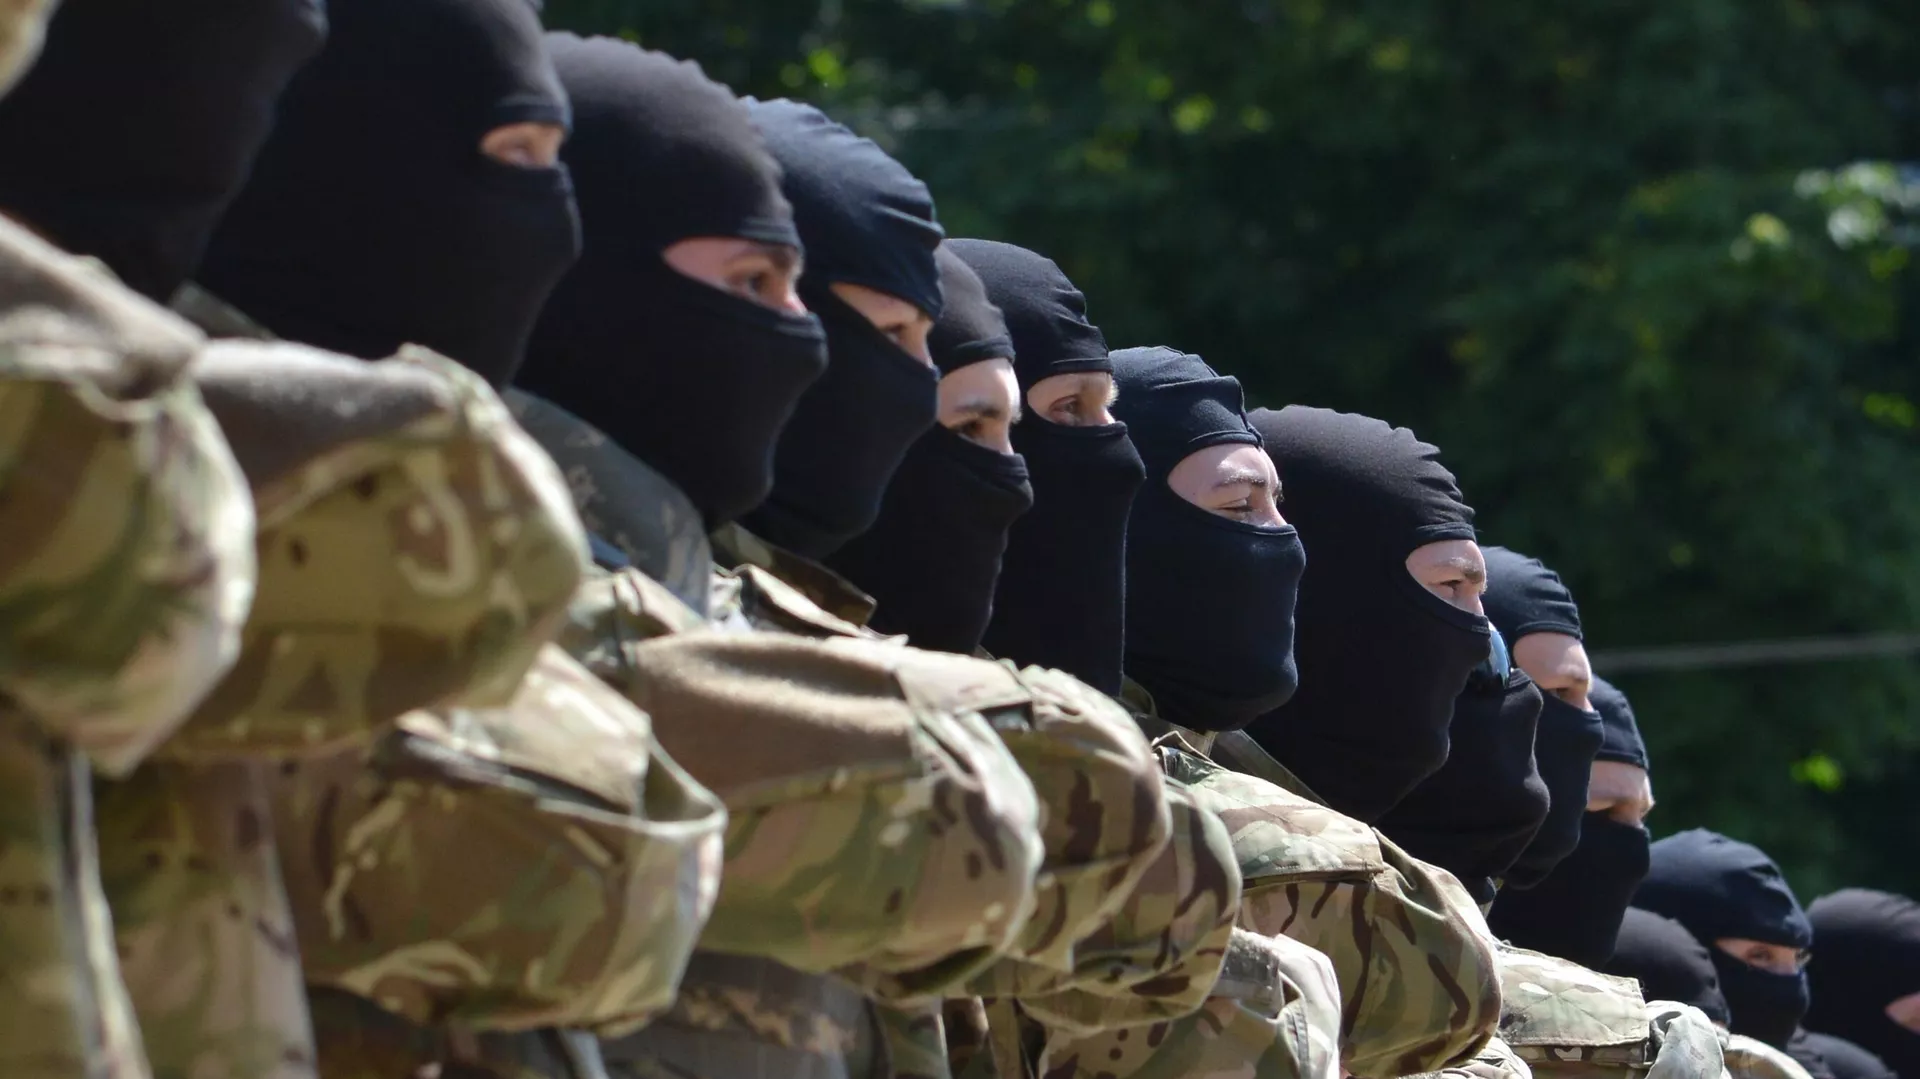  Instructores militares canadienses entrenan a neonazis ucranianos, según medios